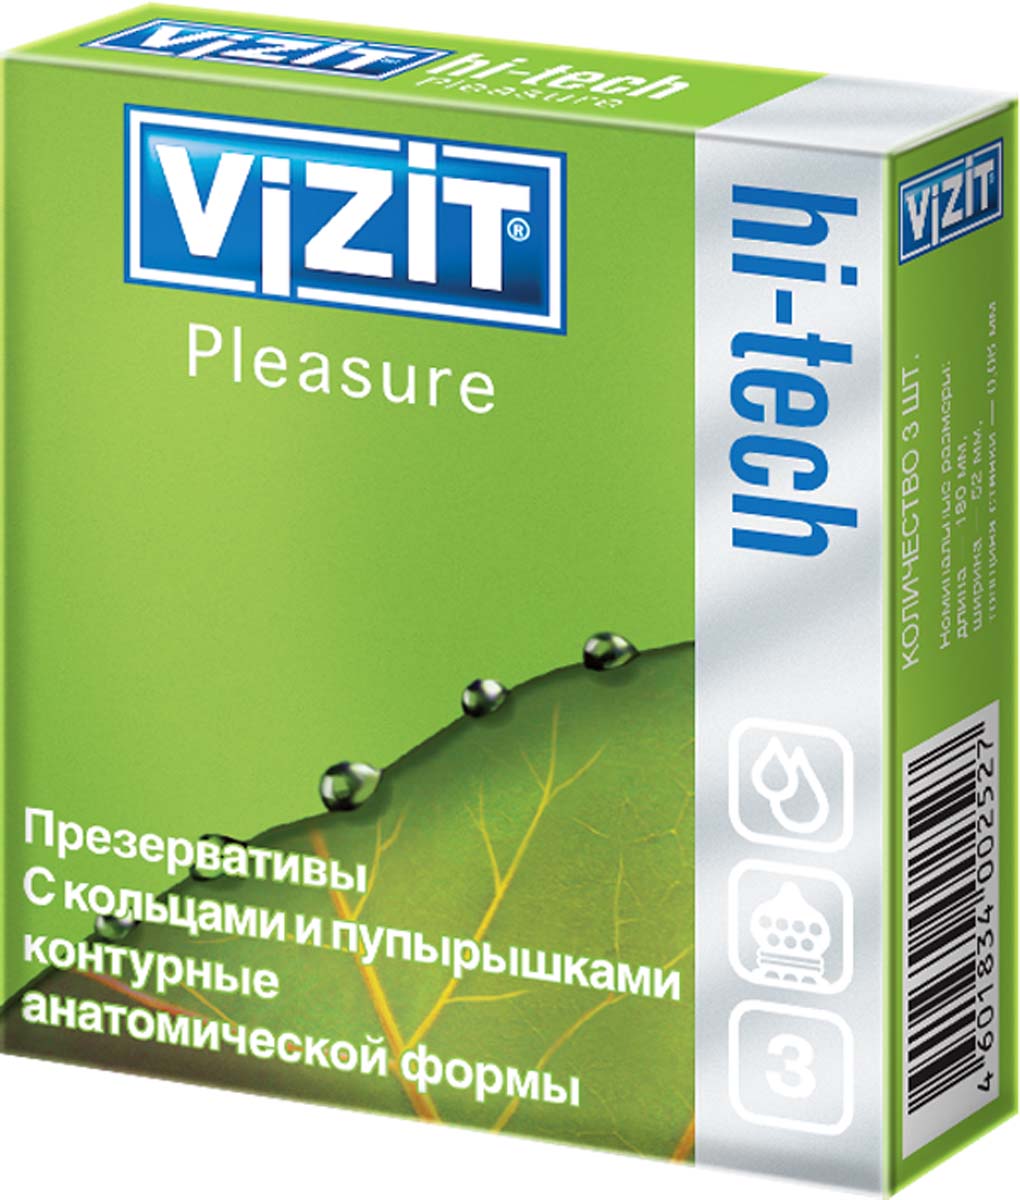 VIZIT Презервативы HI-TECH Pleasure, с кольцами и пупырышками, контурные, анатомической формы, 3 шт